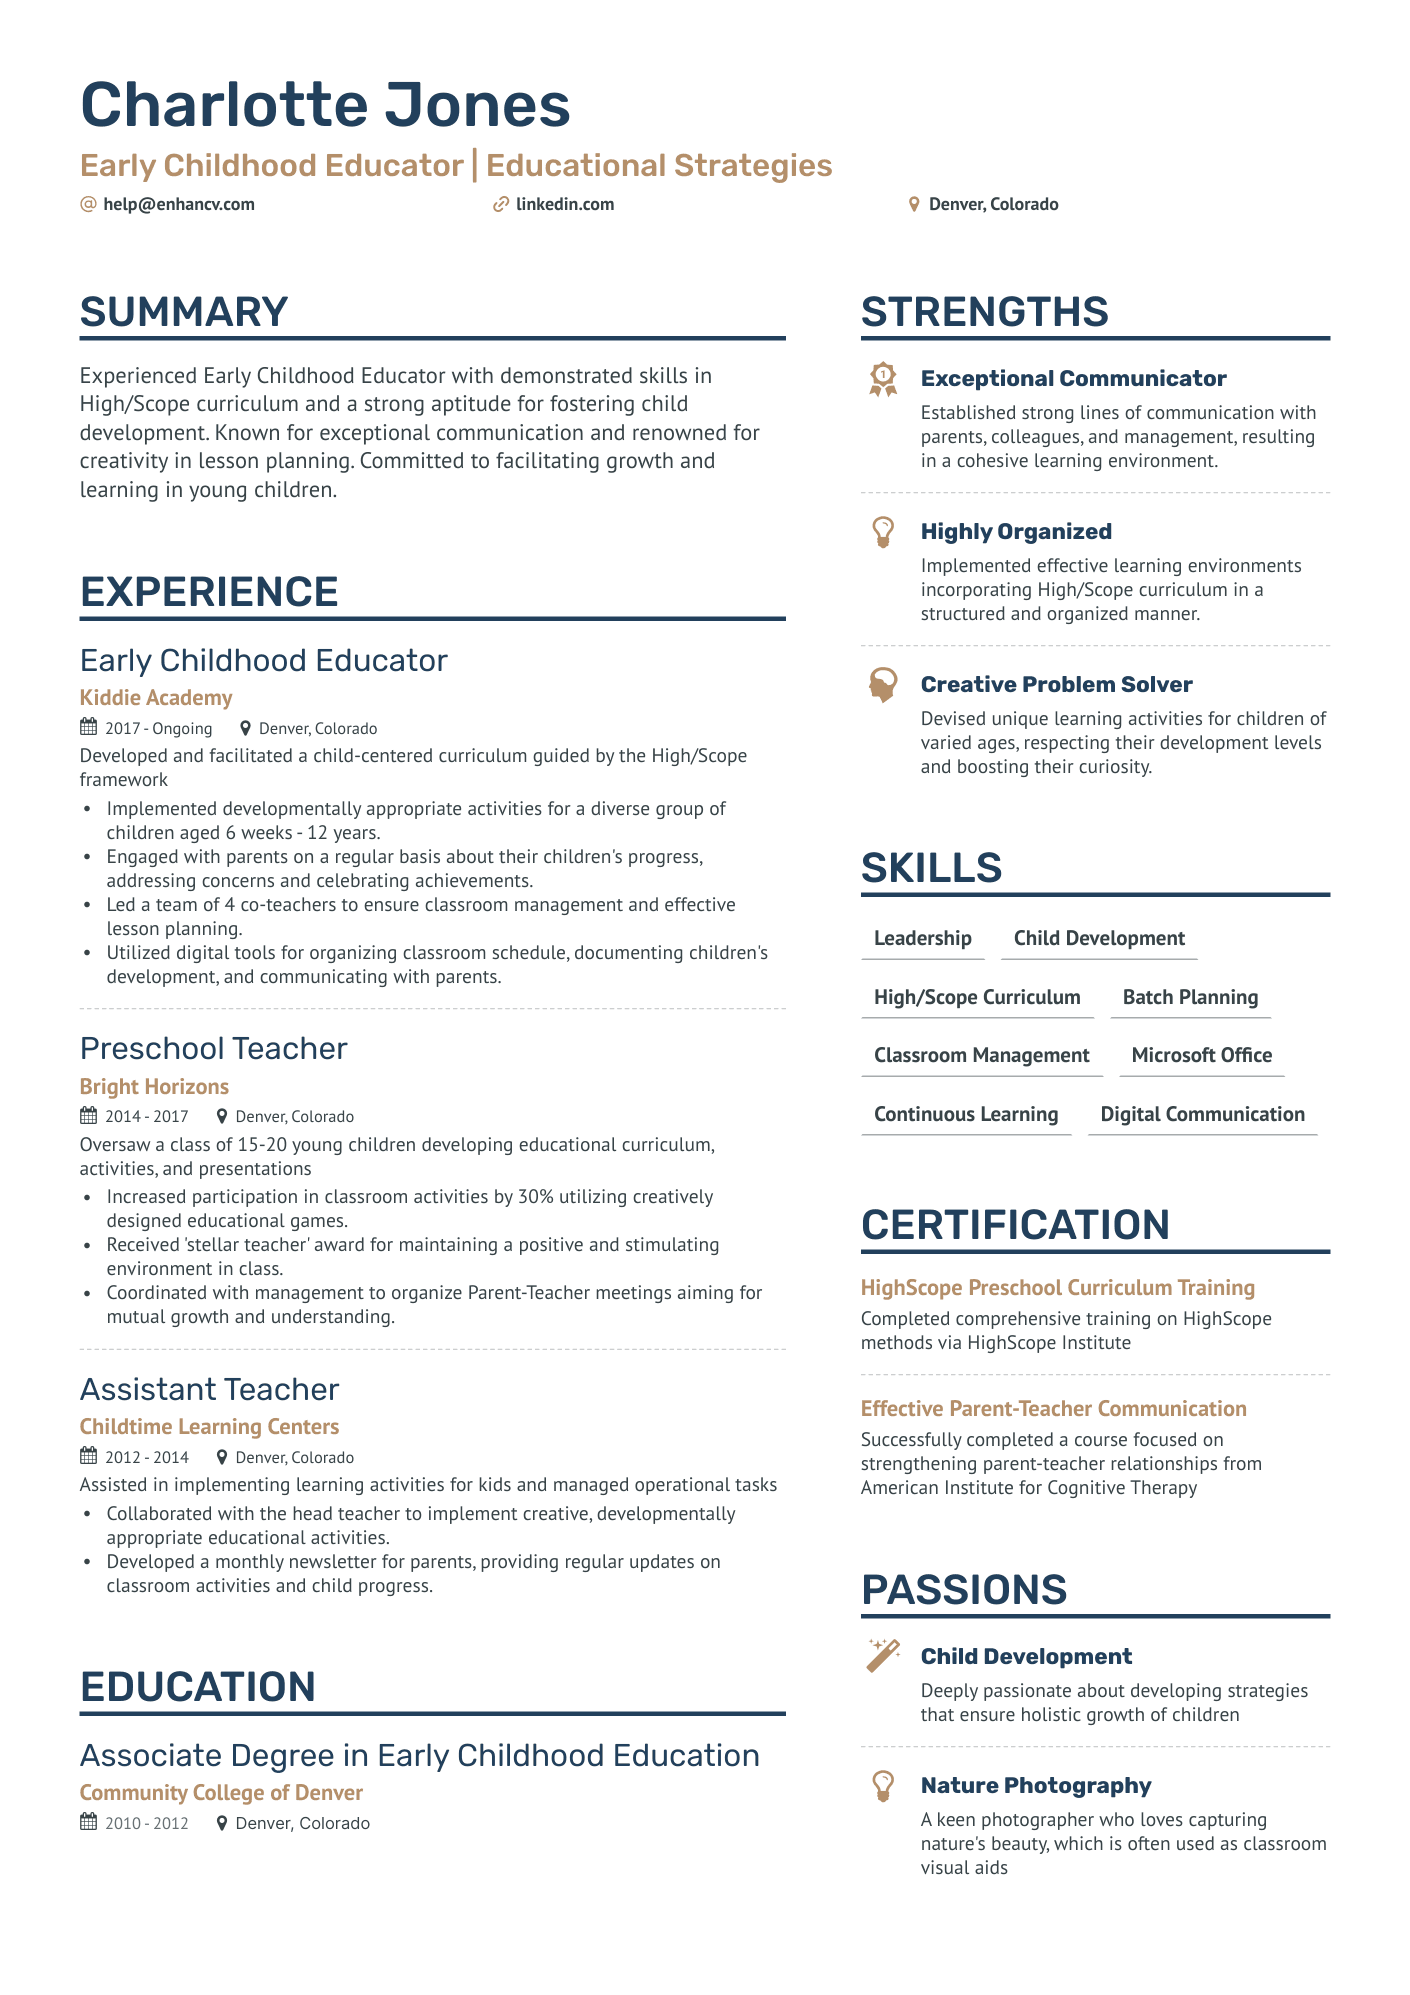 resume skills for preschool teacher